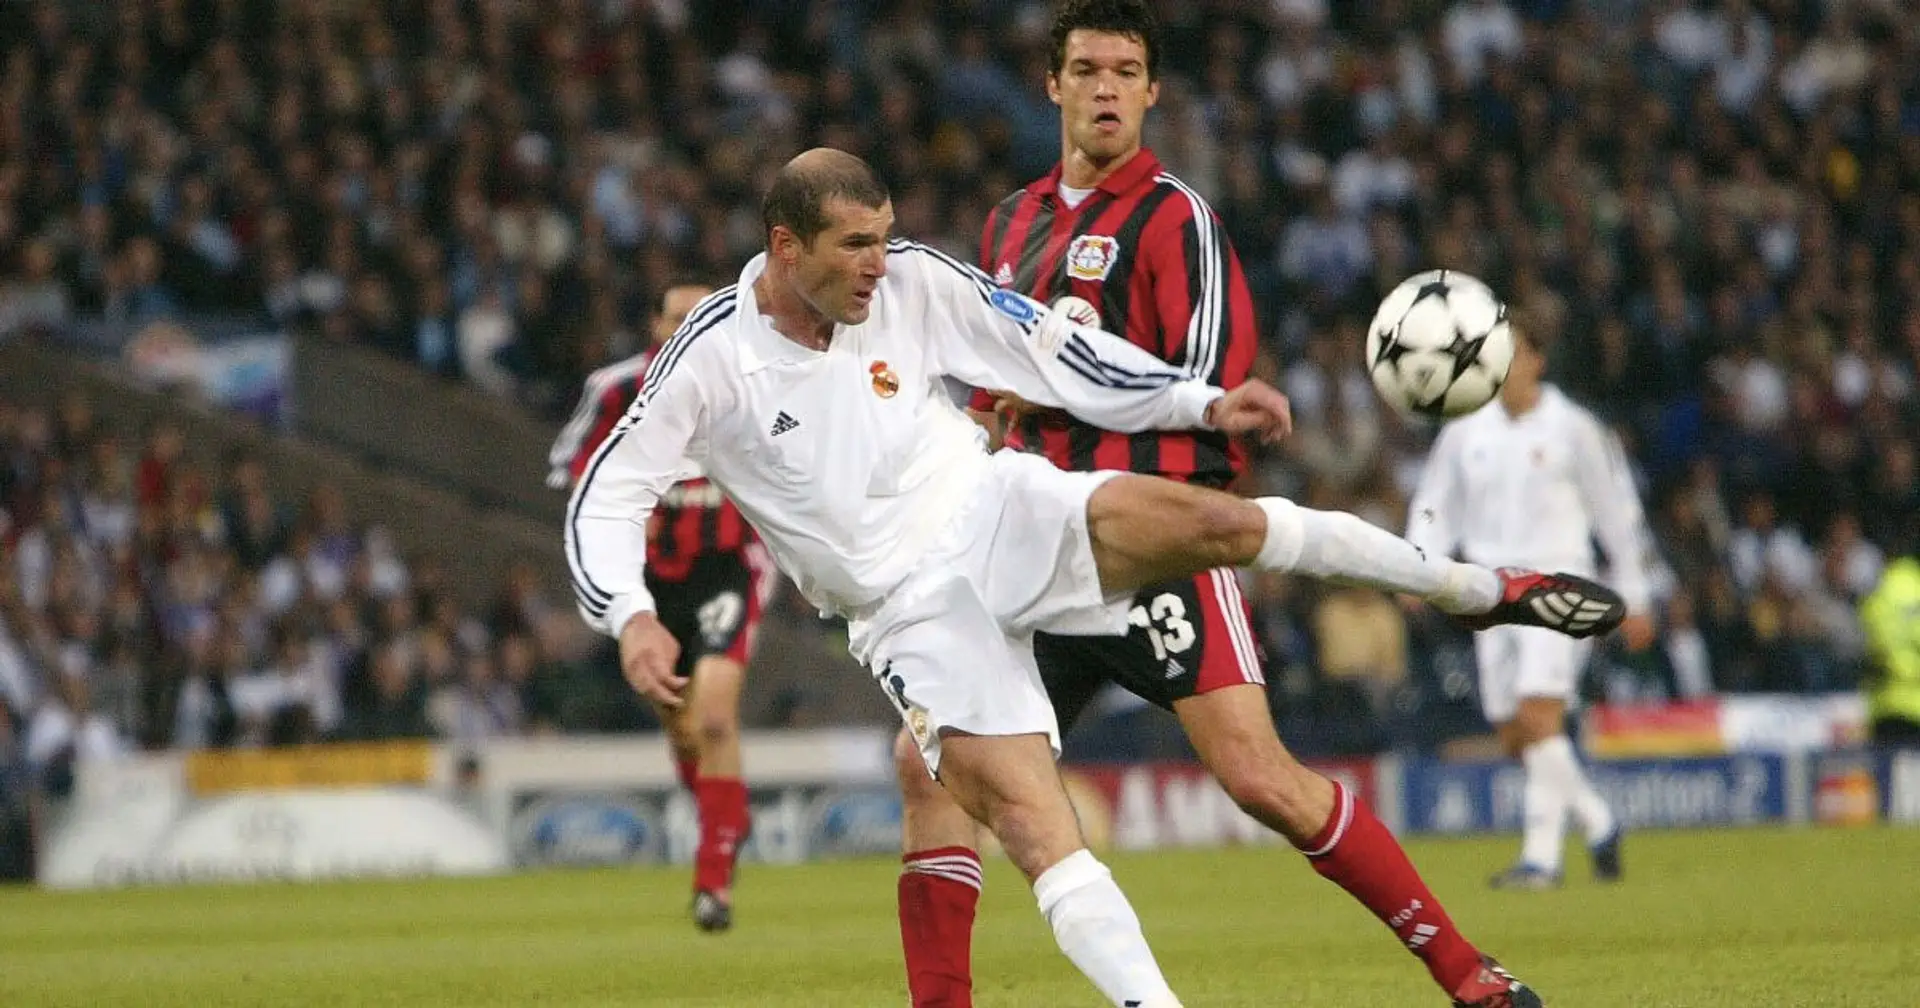 "Les gens oublient à quel point Zidane était frustrant": les fans disent que Zizou n'est pas le GOAT de la France